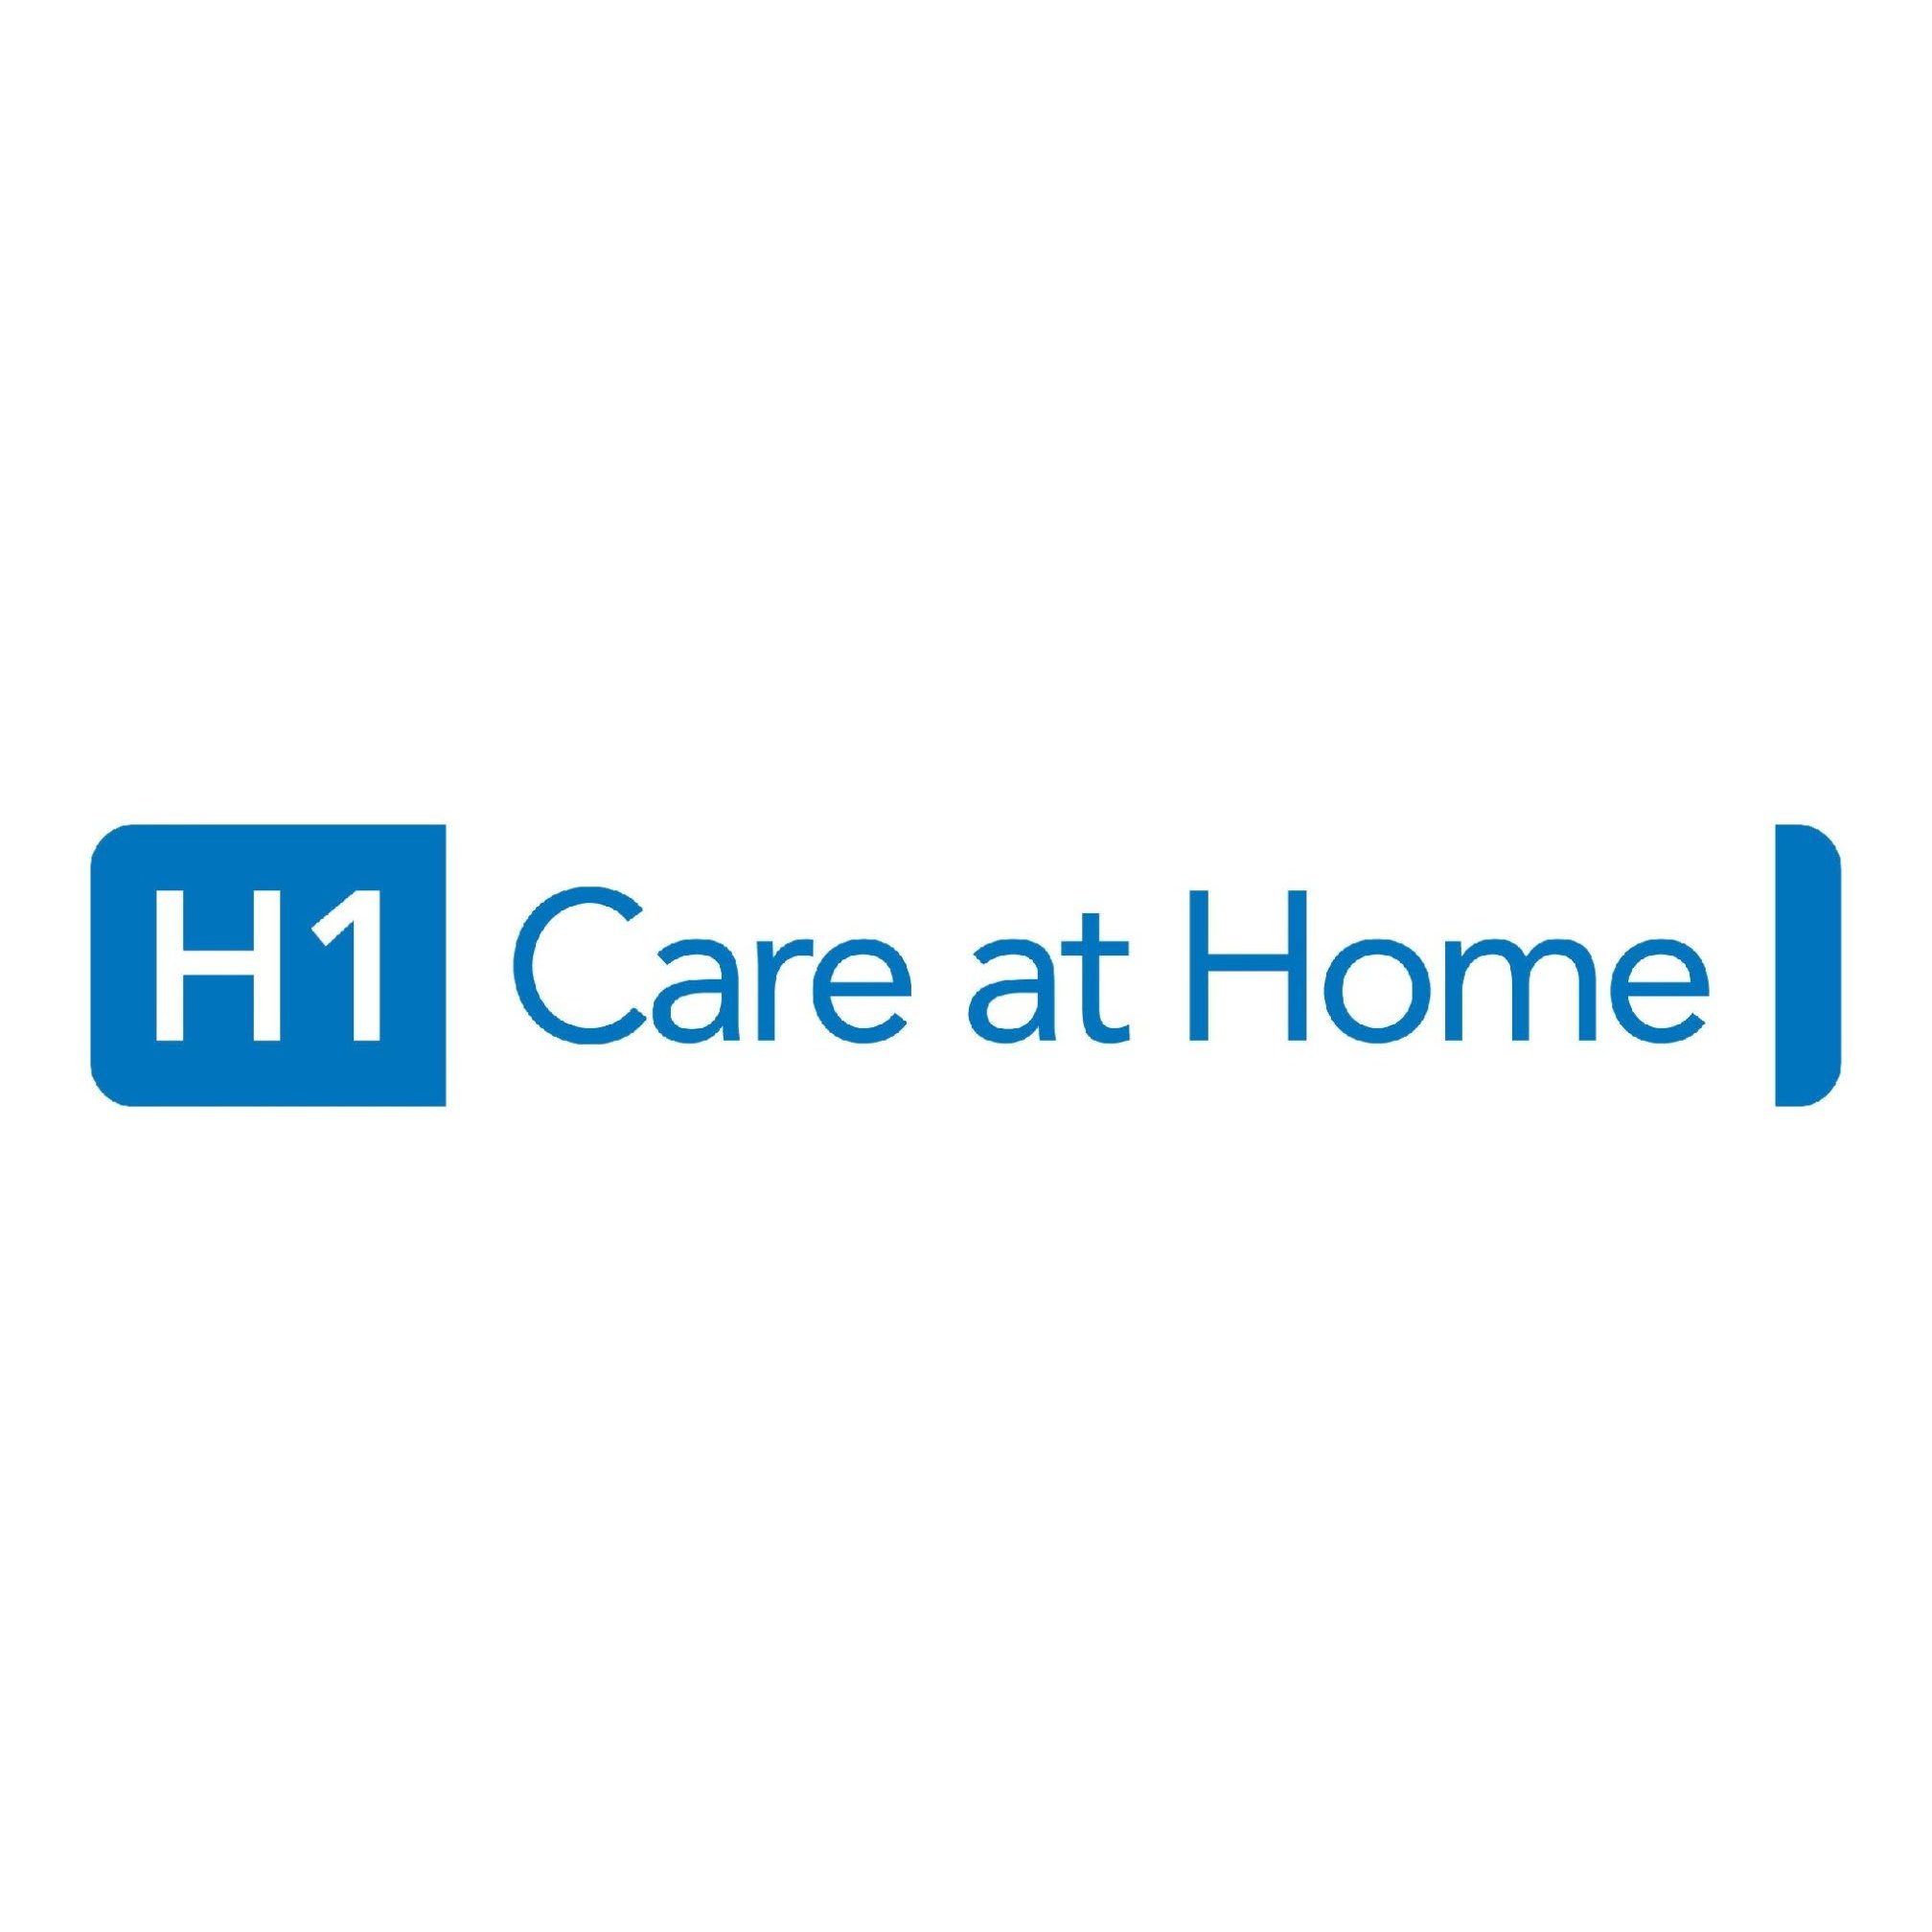 H 1 Care At Home - Forres, Morayshire IV36 1AQ - 01309 250609 | ShowMeLocal.com